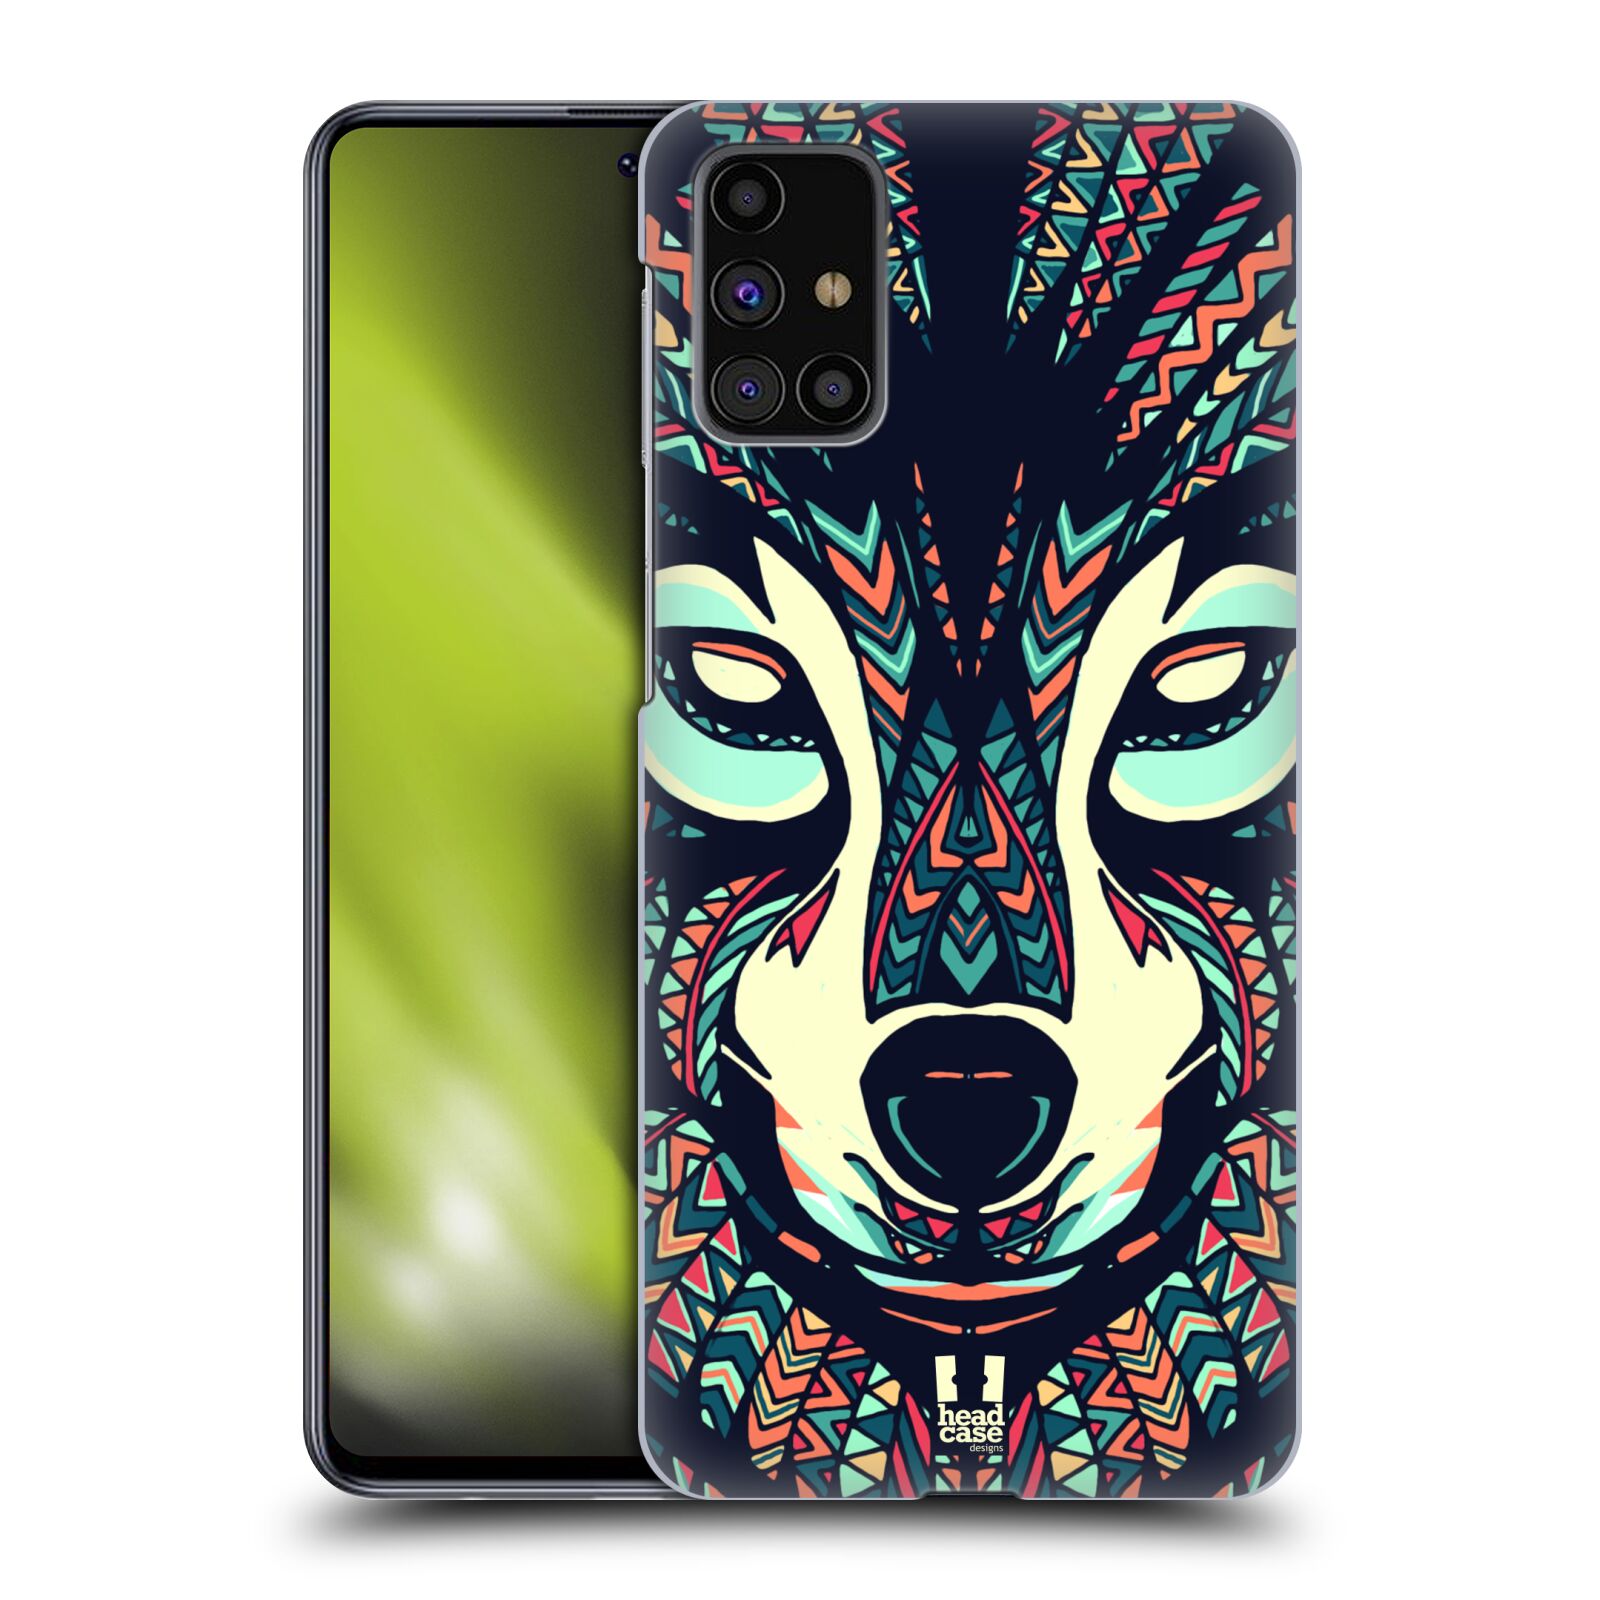 Plastový obal HEAD CASE na mobil Samsung Galaxy M31s vzor Aztécký motiv zvíře 3 vlk